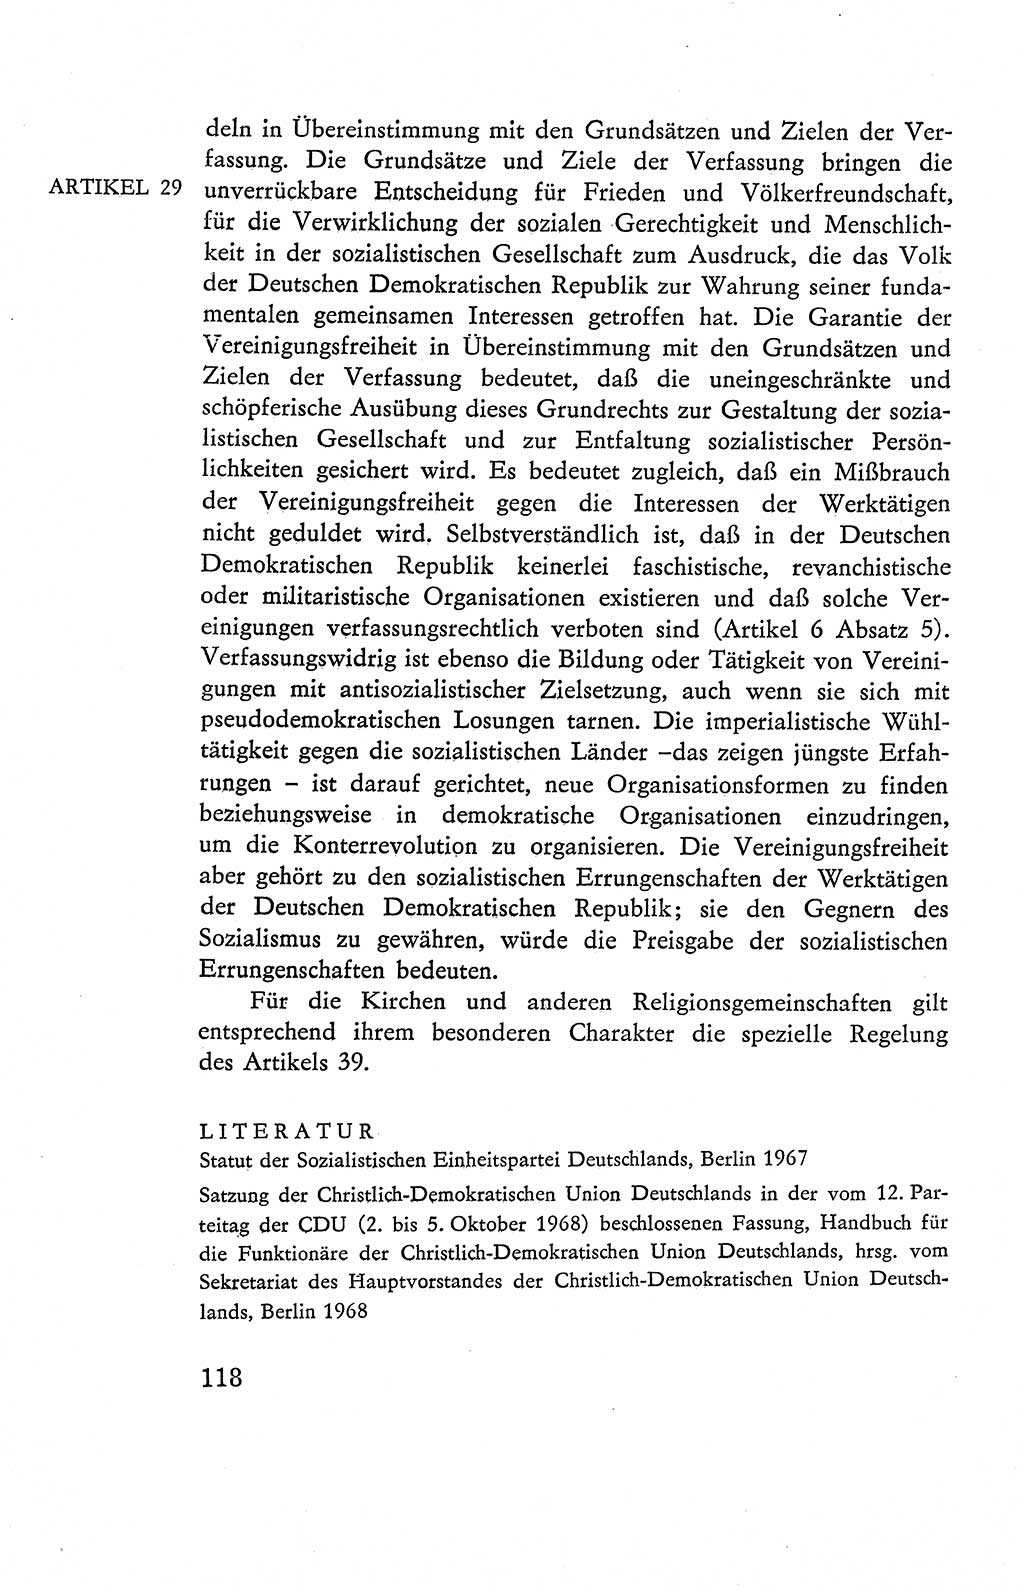 Verfassung der Deutschen Demokratischen Republik (DDR), Dokumente, Kommentar 1969, Band 2, Seite 118 (Verf. DDR Dok. Komm. 1969, Bd. 2, S. 118)